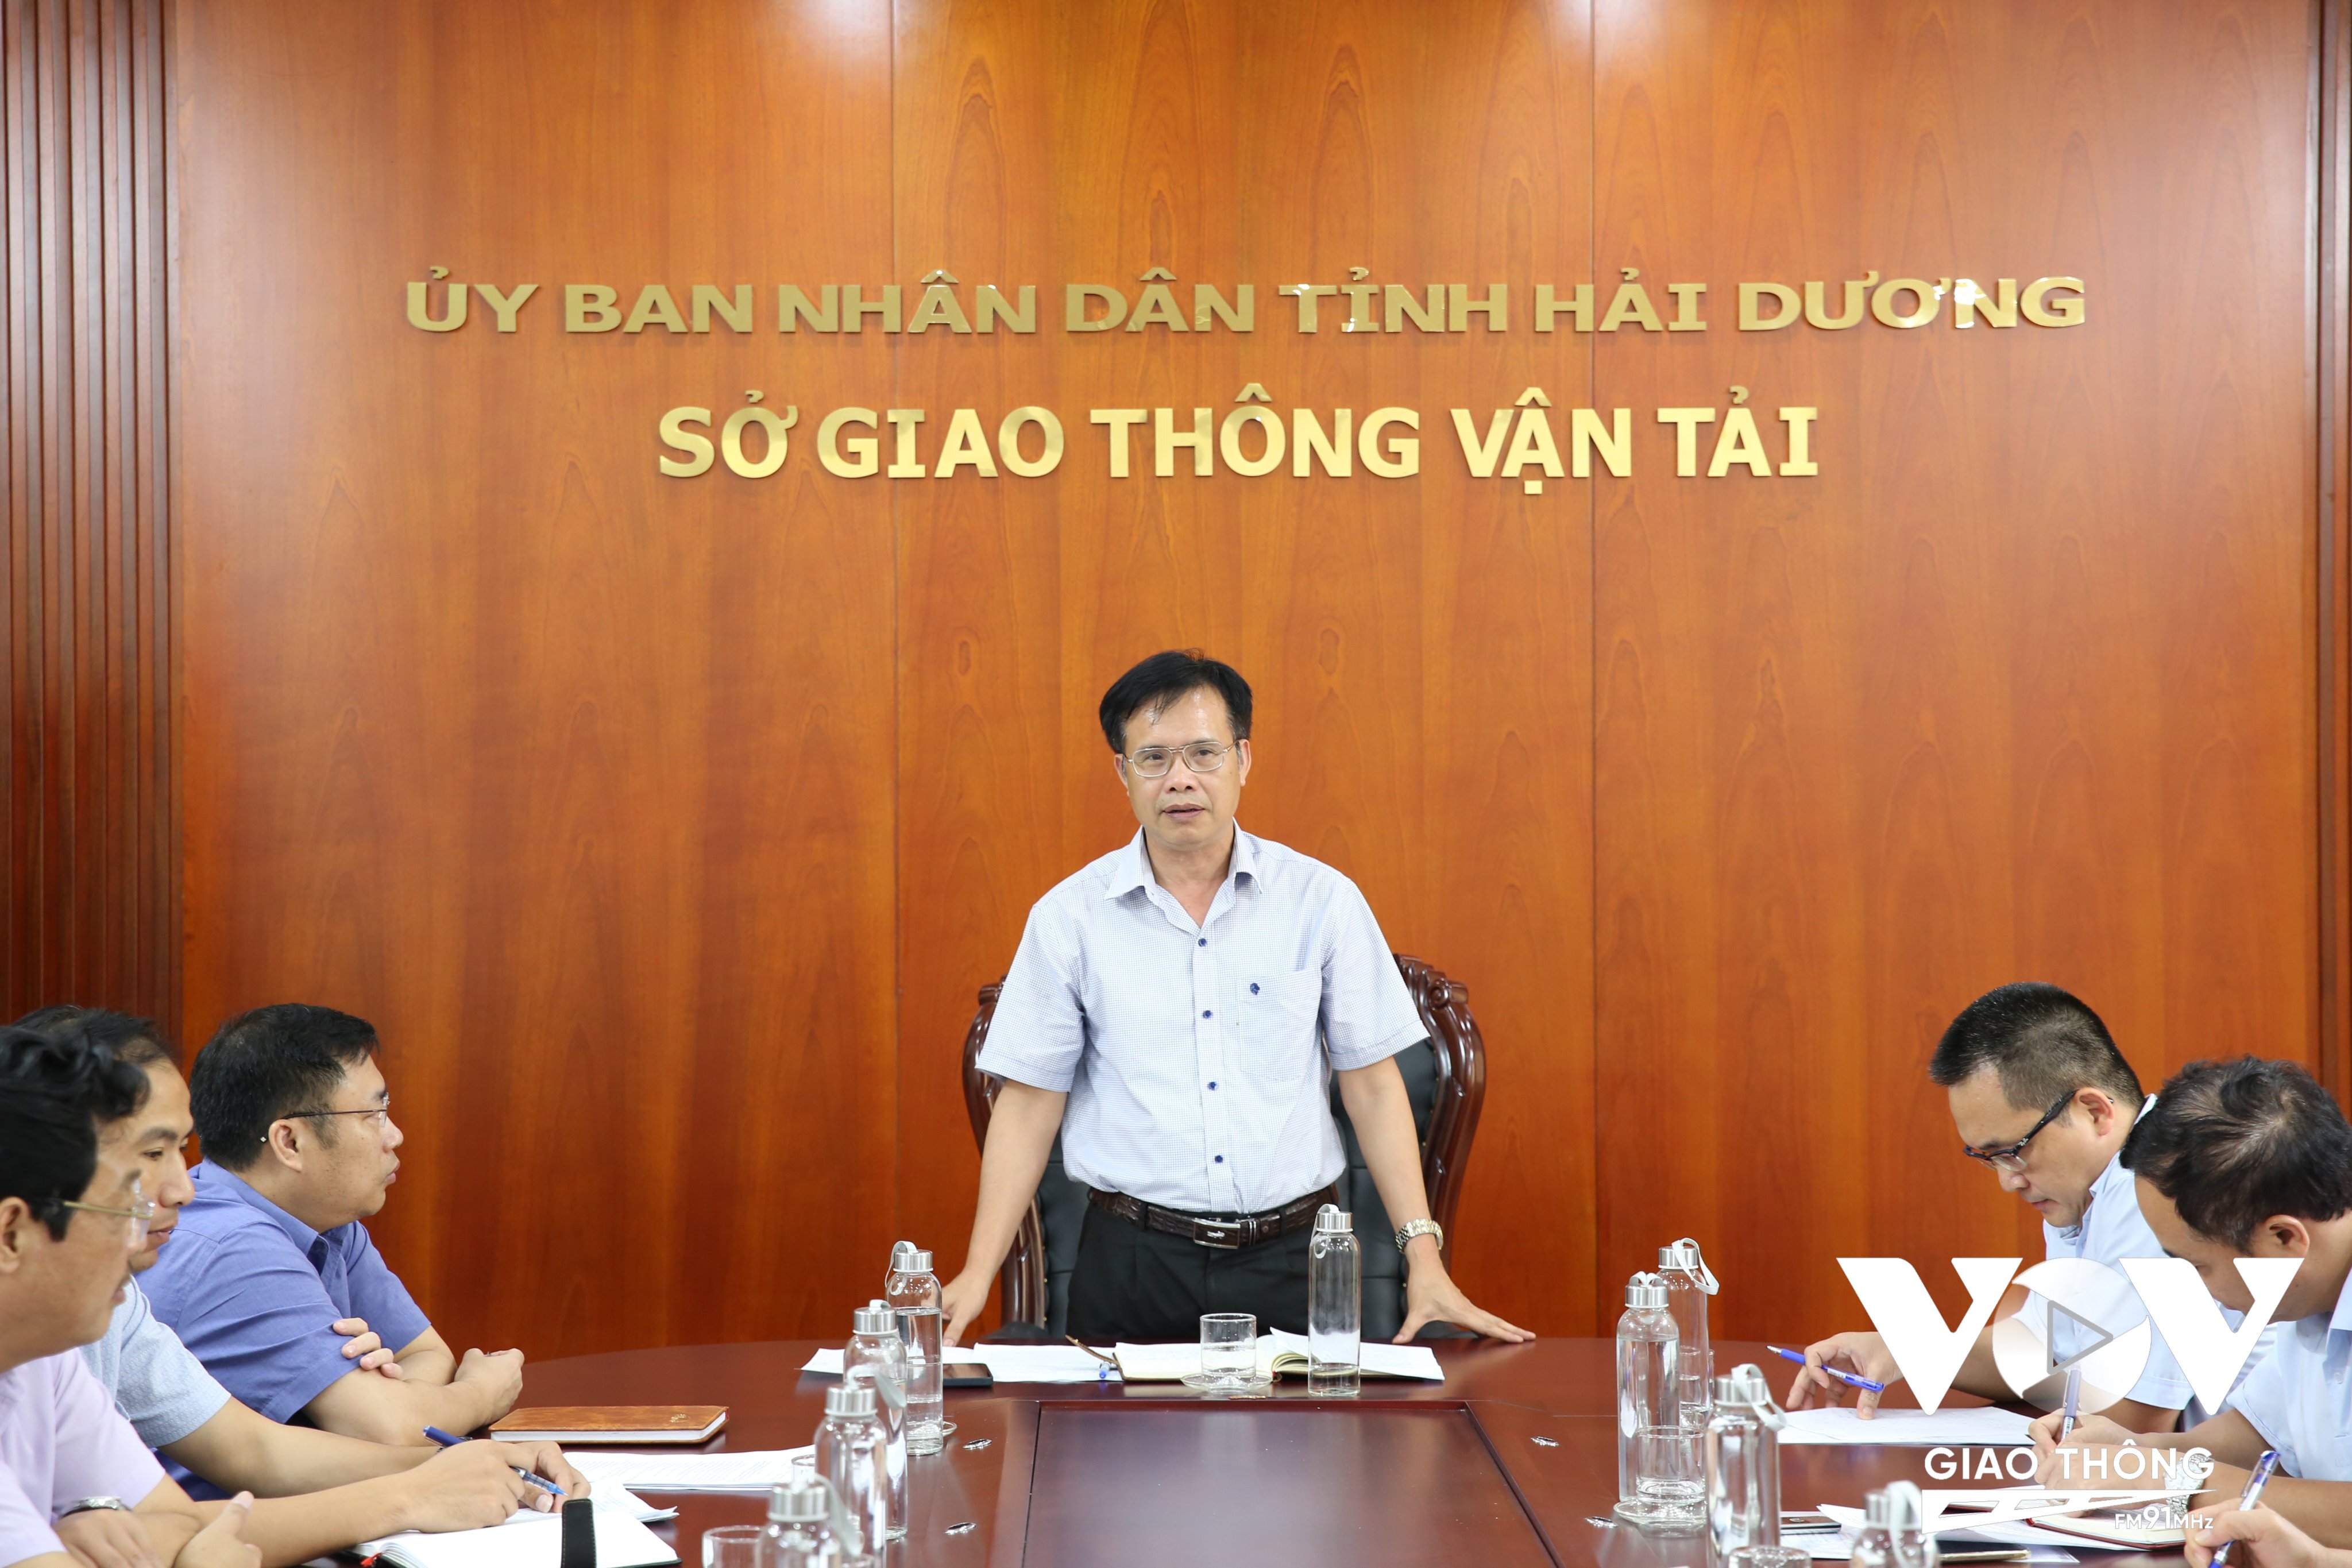 Ông Vũ Văn Tùng, Giám đốc Sở GTVT Hải Dương cam kết giám sát chặt chẽ dự án sửa đường, gắn trách nhiệm CSGT, đơn vị thi công tại các điểm nóng và mong người dân thông cảm, chia sẻ khó khăn